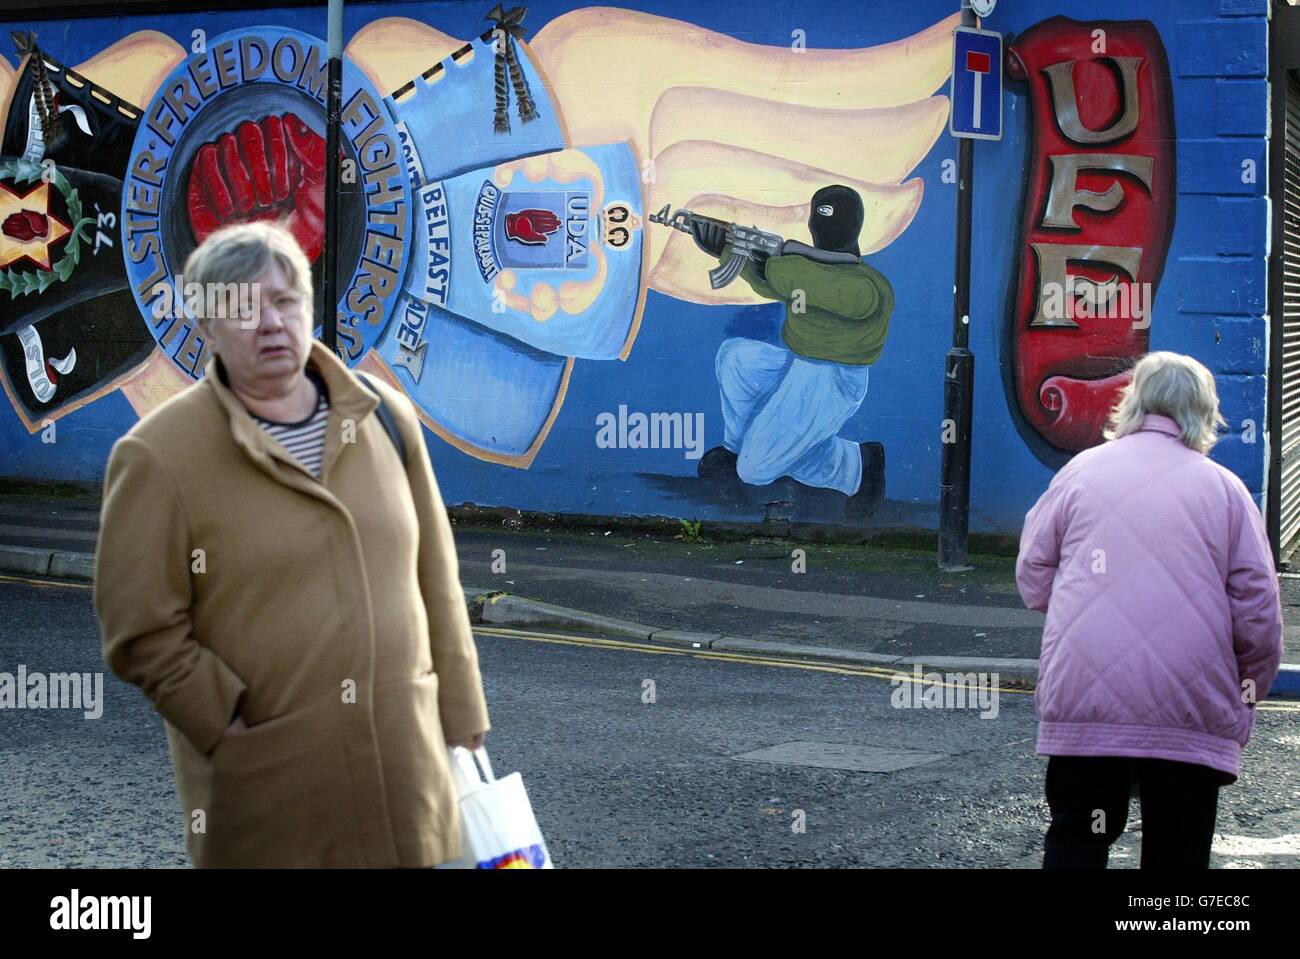 Ulster Defense Association (UDA) murales a Belfast, il giorno in cui il governo è pronto ad annunciare che sta riconoscendo il cessate il fuoco dell'Ulster Defense Association, il più grande gruppo paramilitare fedele dell'Irlanda del Nord. L'UDA è stato incolpato di un feroce attacco settario contro tre cattolici in agosto. Foto Stock